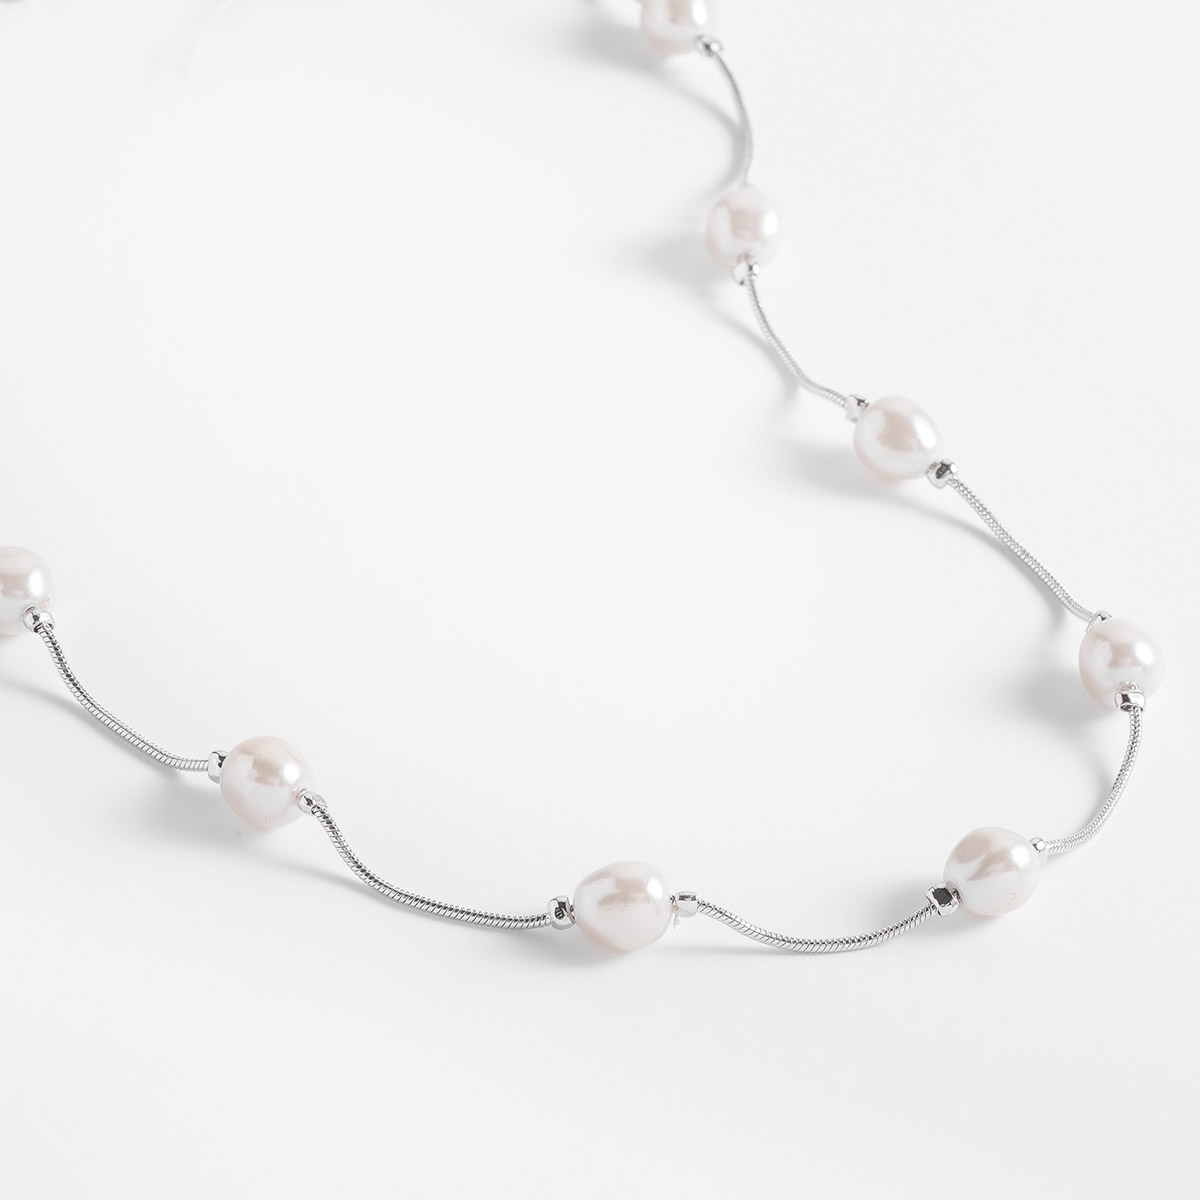 Espectacular y delicado collar en baño de platino, adornado con perlas en tono cream. 
-Collar
-42 cm
-Baño de Platino
-Perlas en tono cream